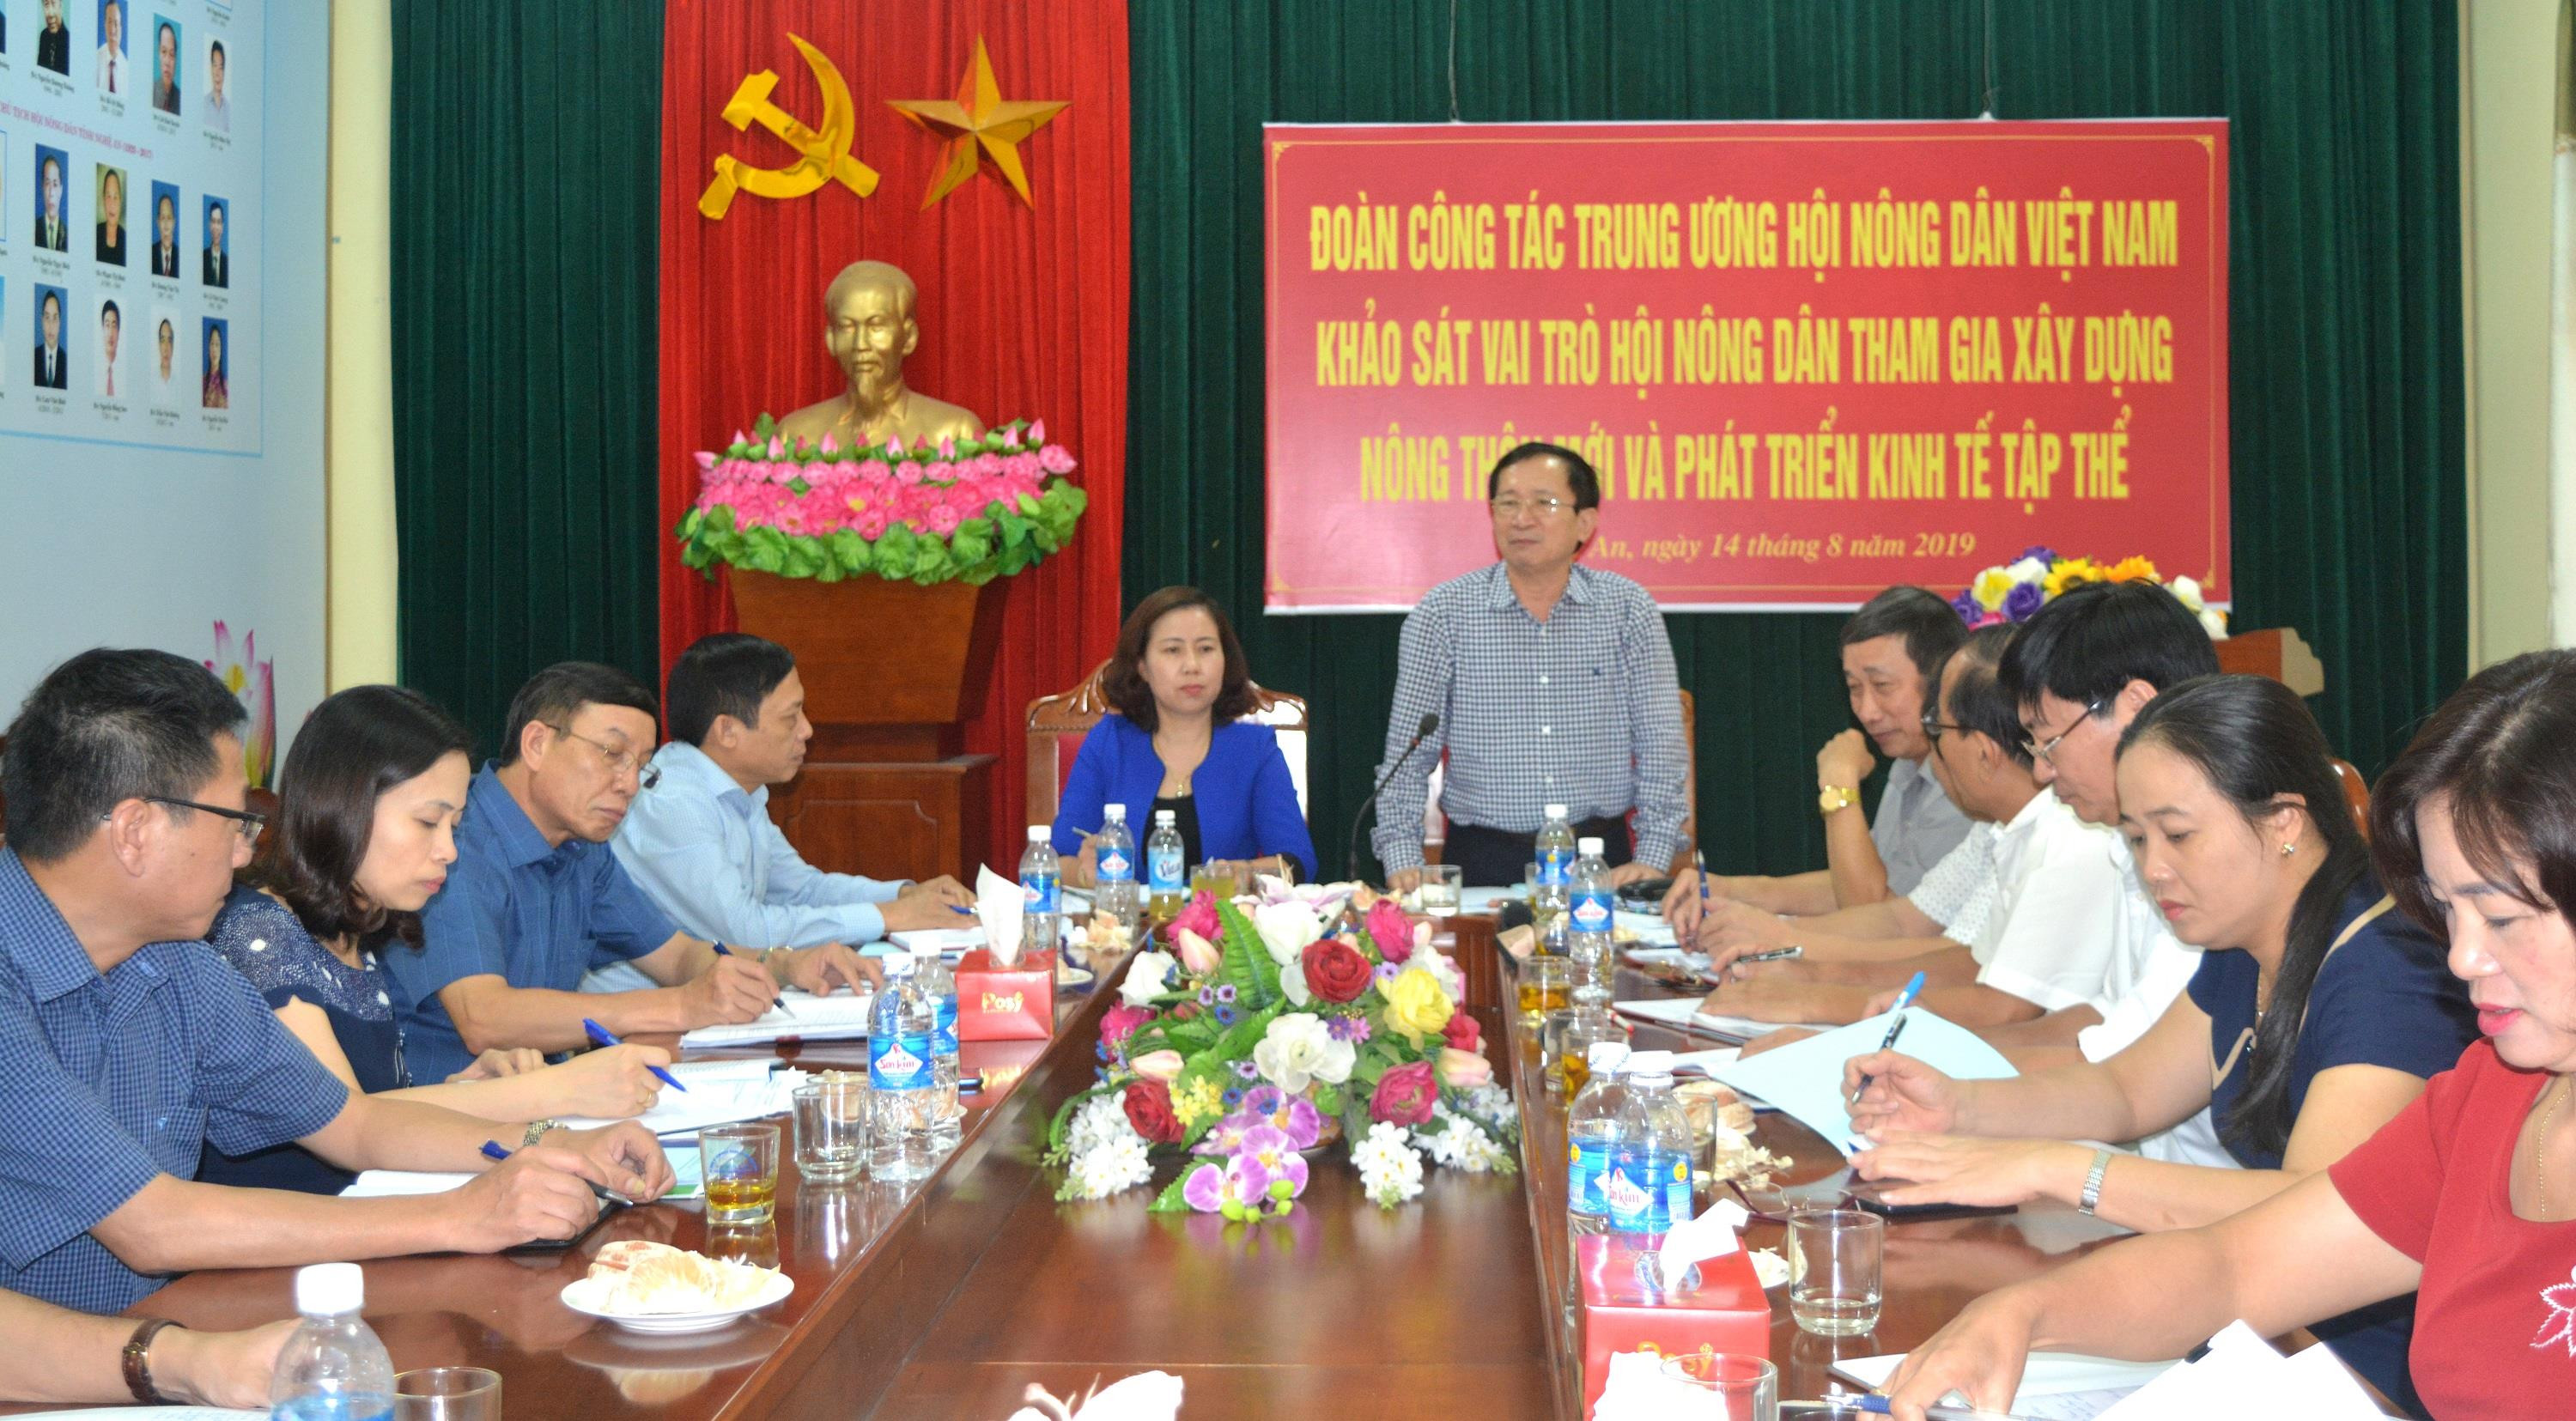 Đồng chí Đinh Viết Hồng khẳng định vai trò chủ thể của nông dân và đóng góp của các cấp Hội Nông dân trong việc xây dựng NTM trên địa bàn tỉnh. Ảnh: Thanh Phúc